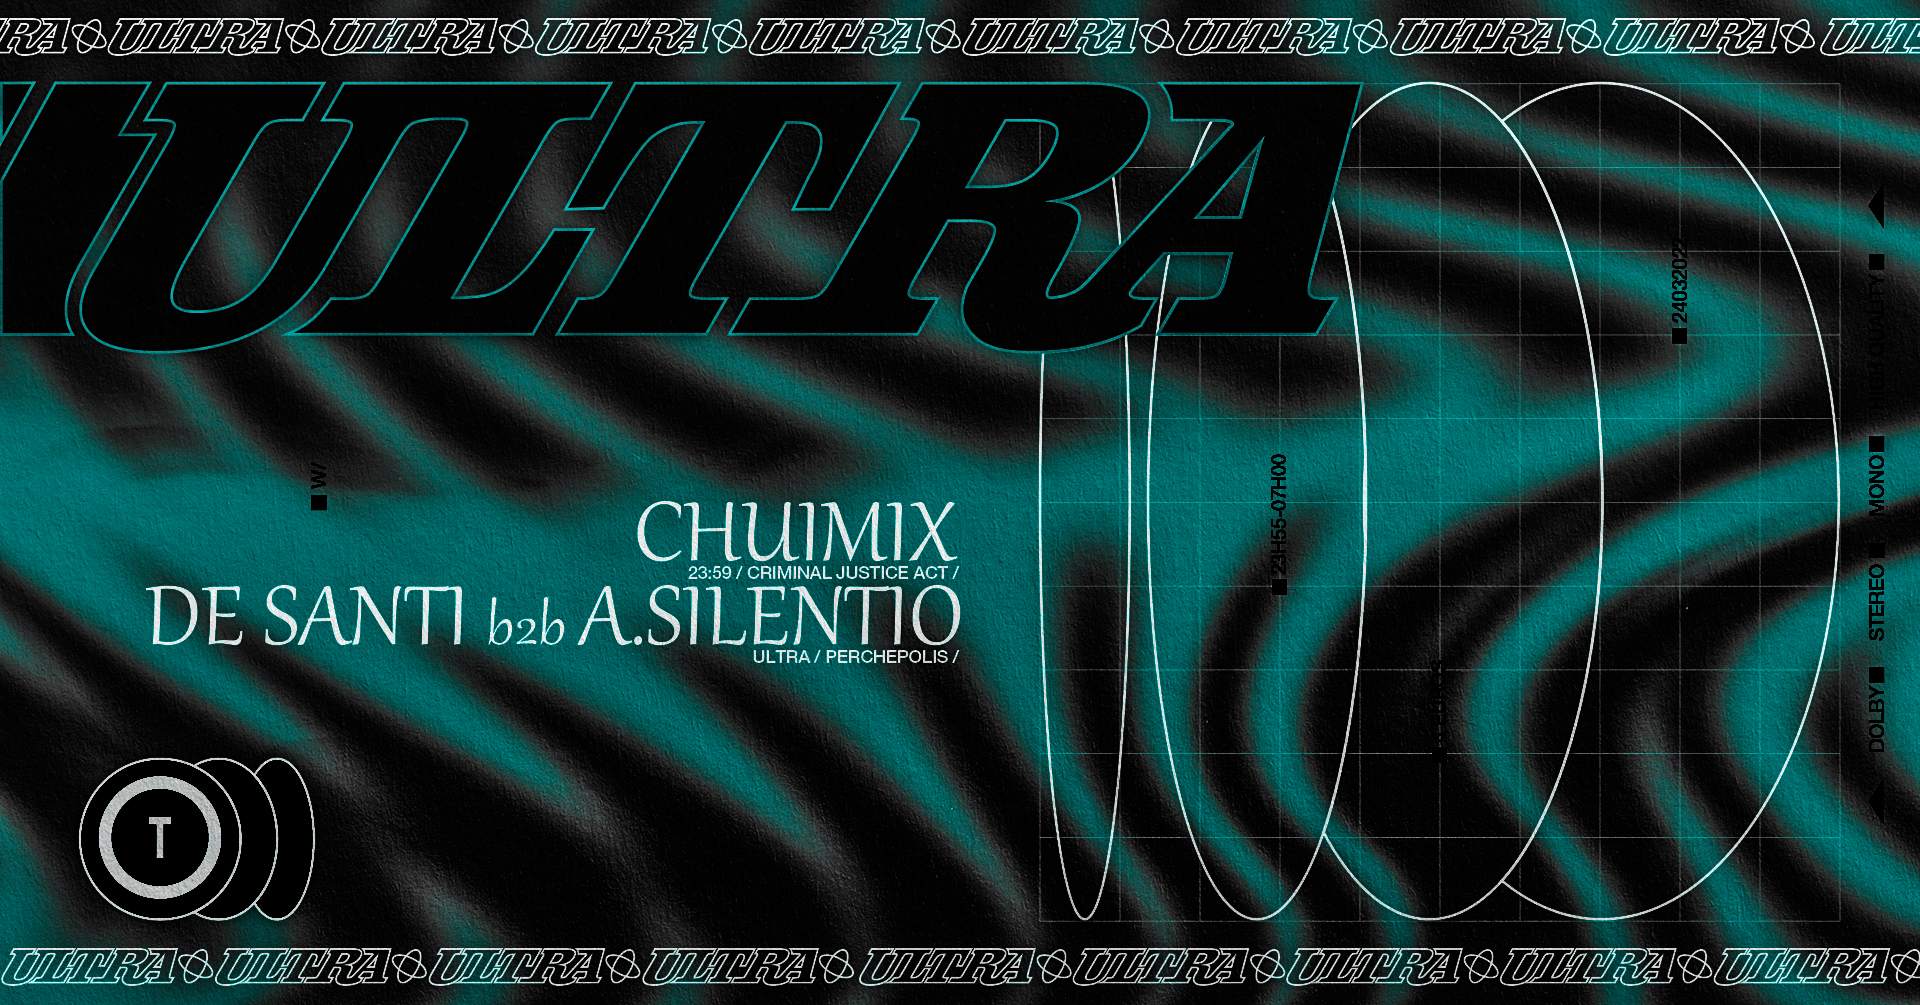 ULTRA: Chuimix, De Santi, A. Silentio - フライヤー表